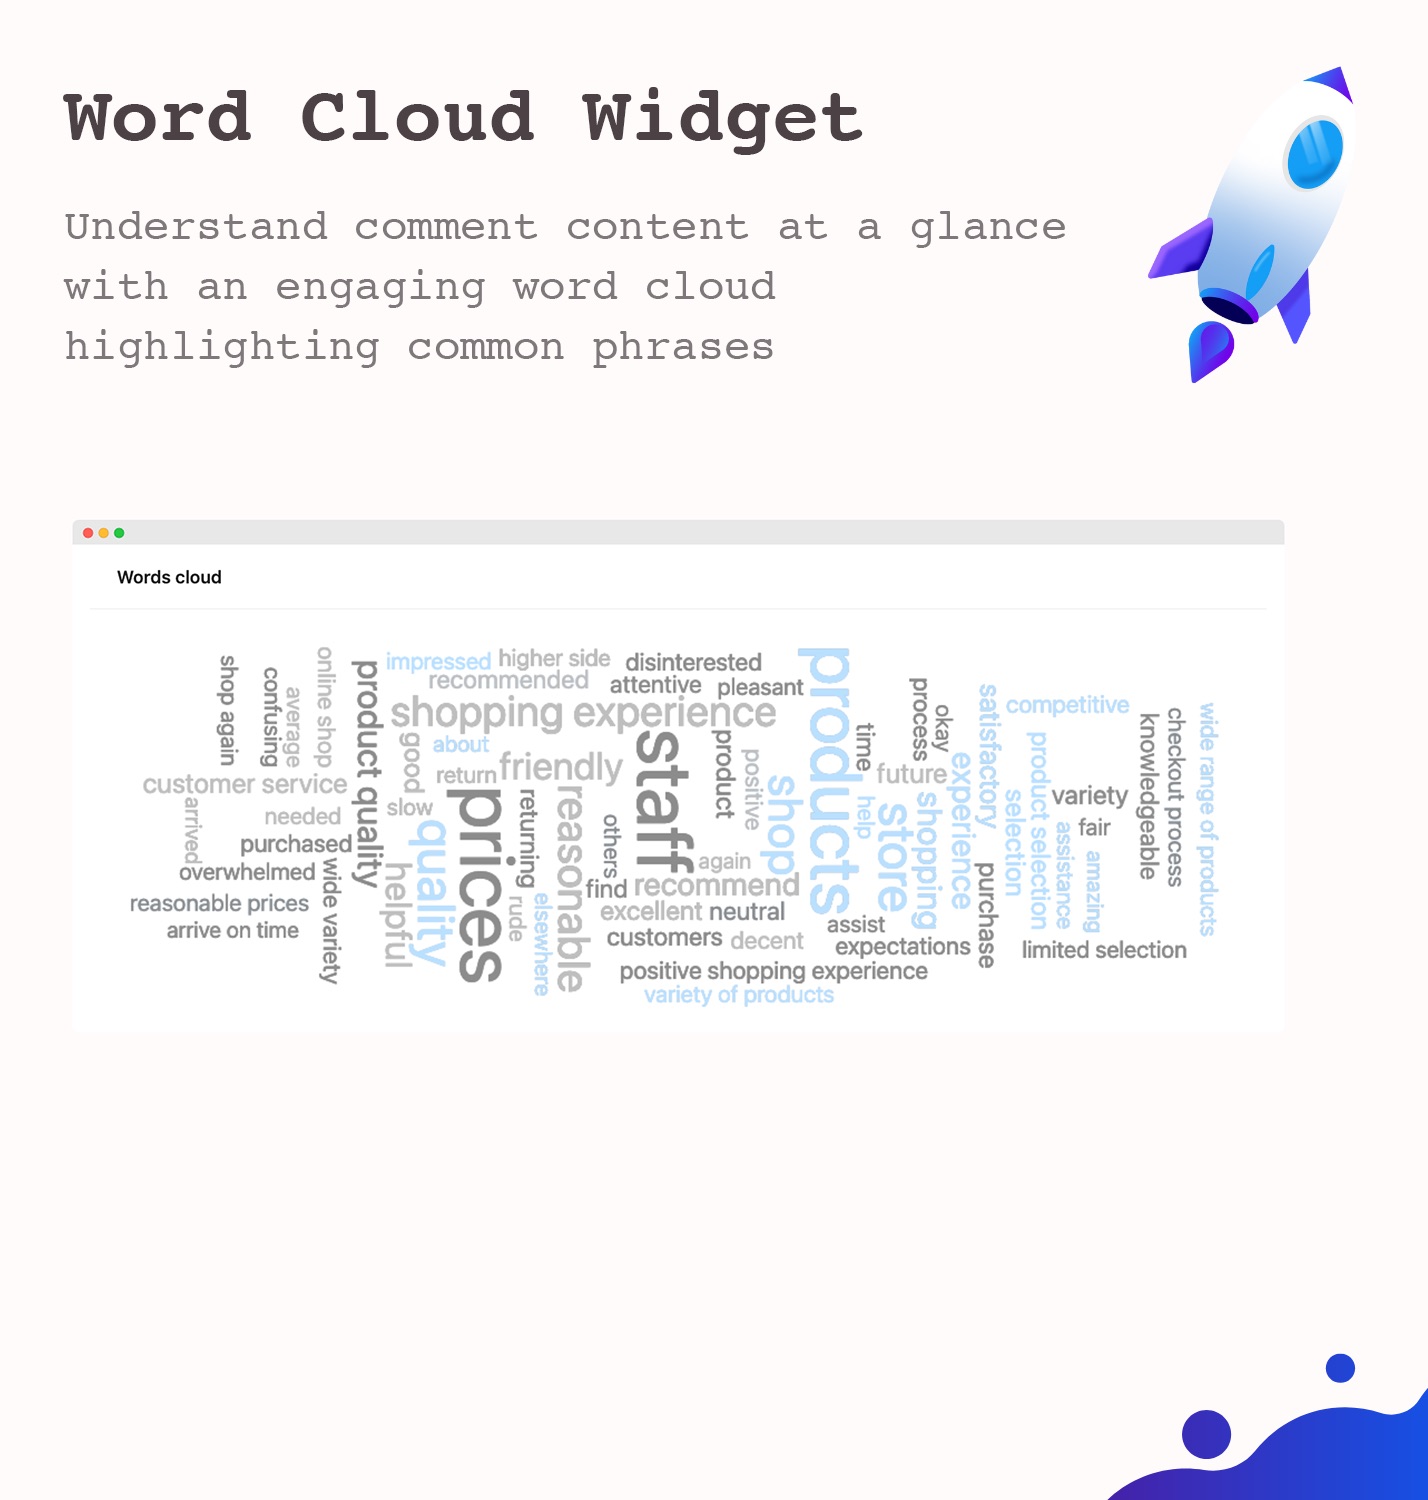 Word cloud widget